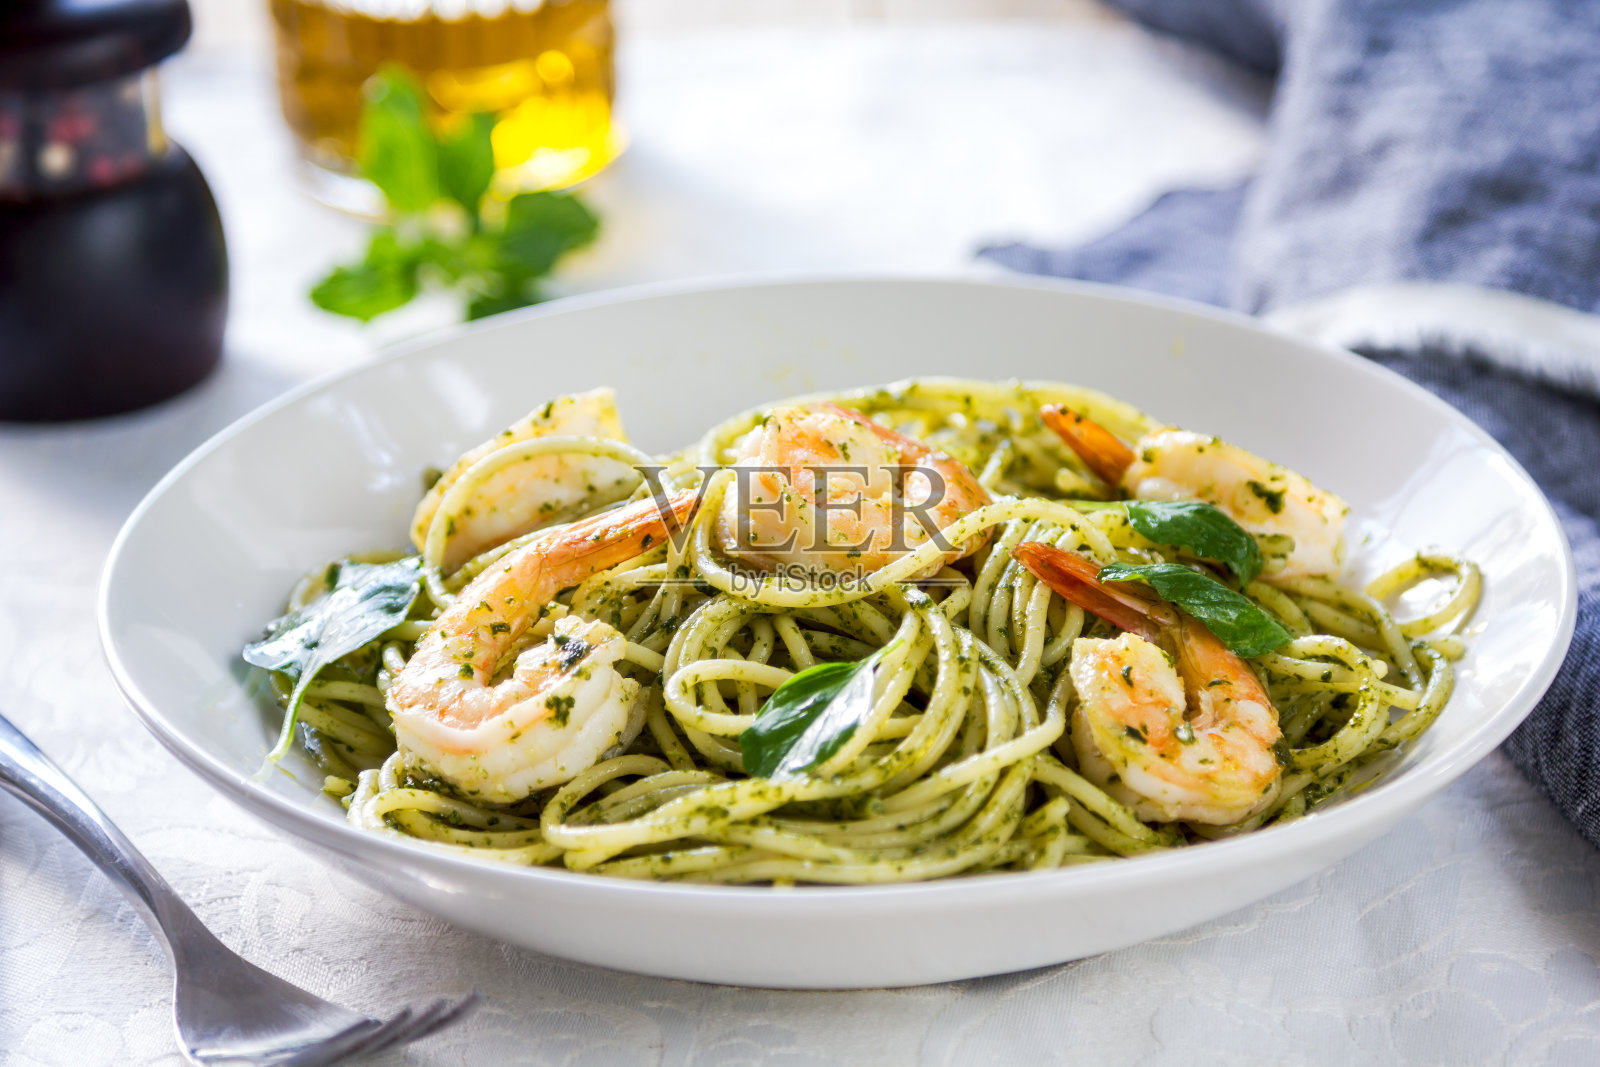 蒜香虾仁意大利面 Garlic shrimp pasta食譜、做法 | Sabrina Ye的Cook1Cook食譜分享